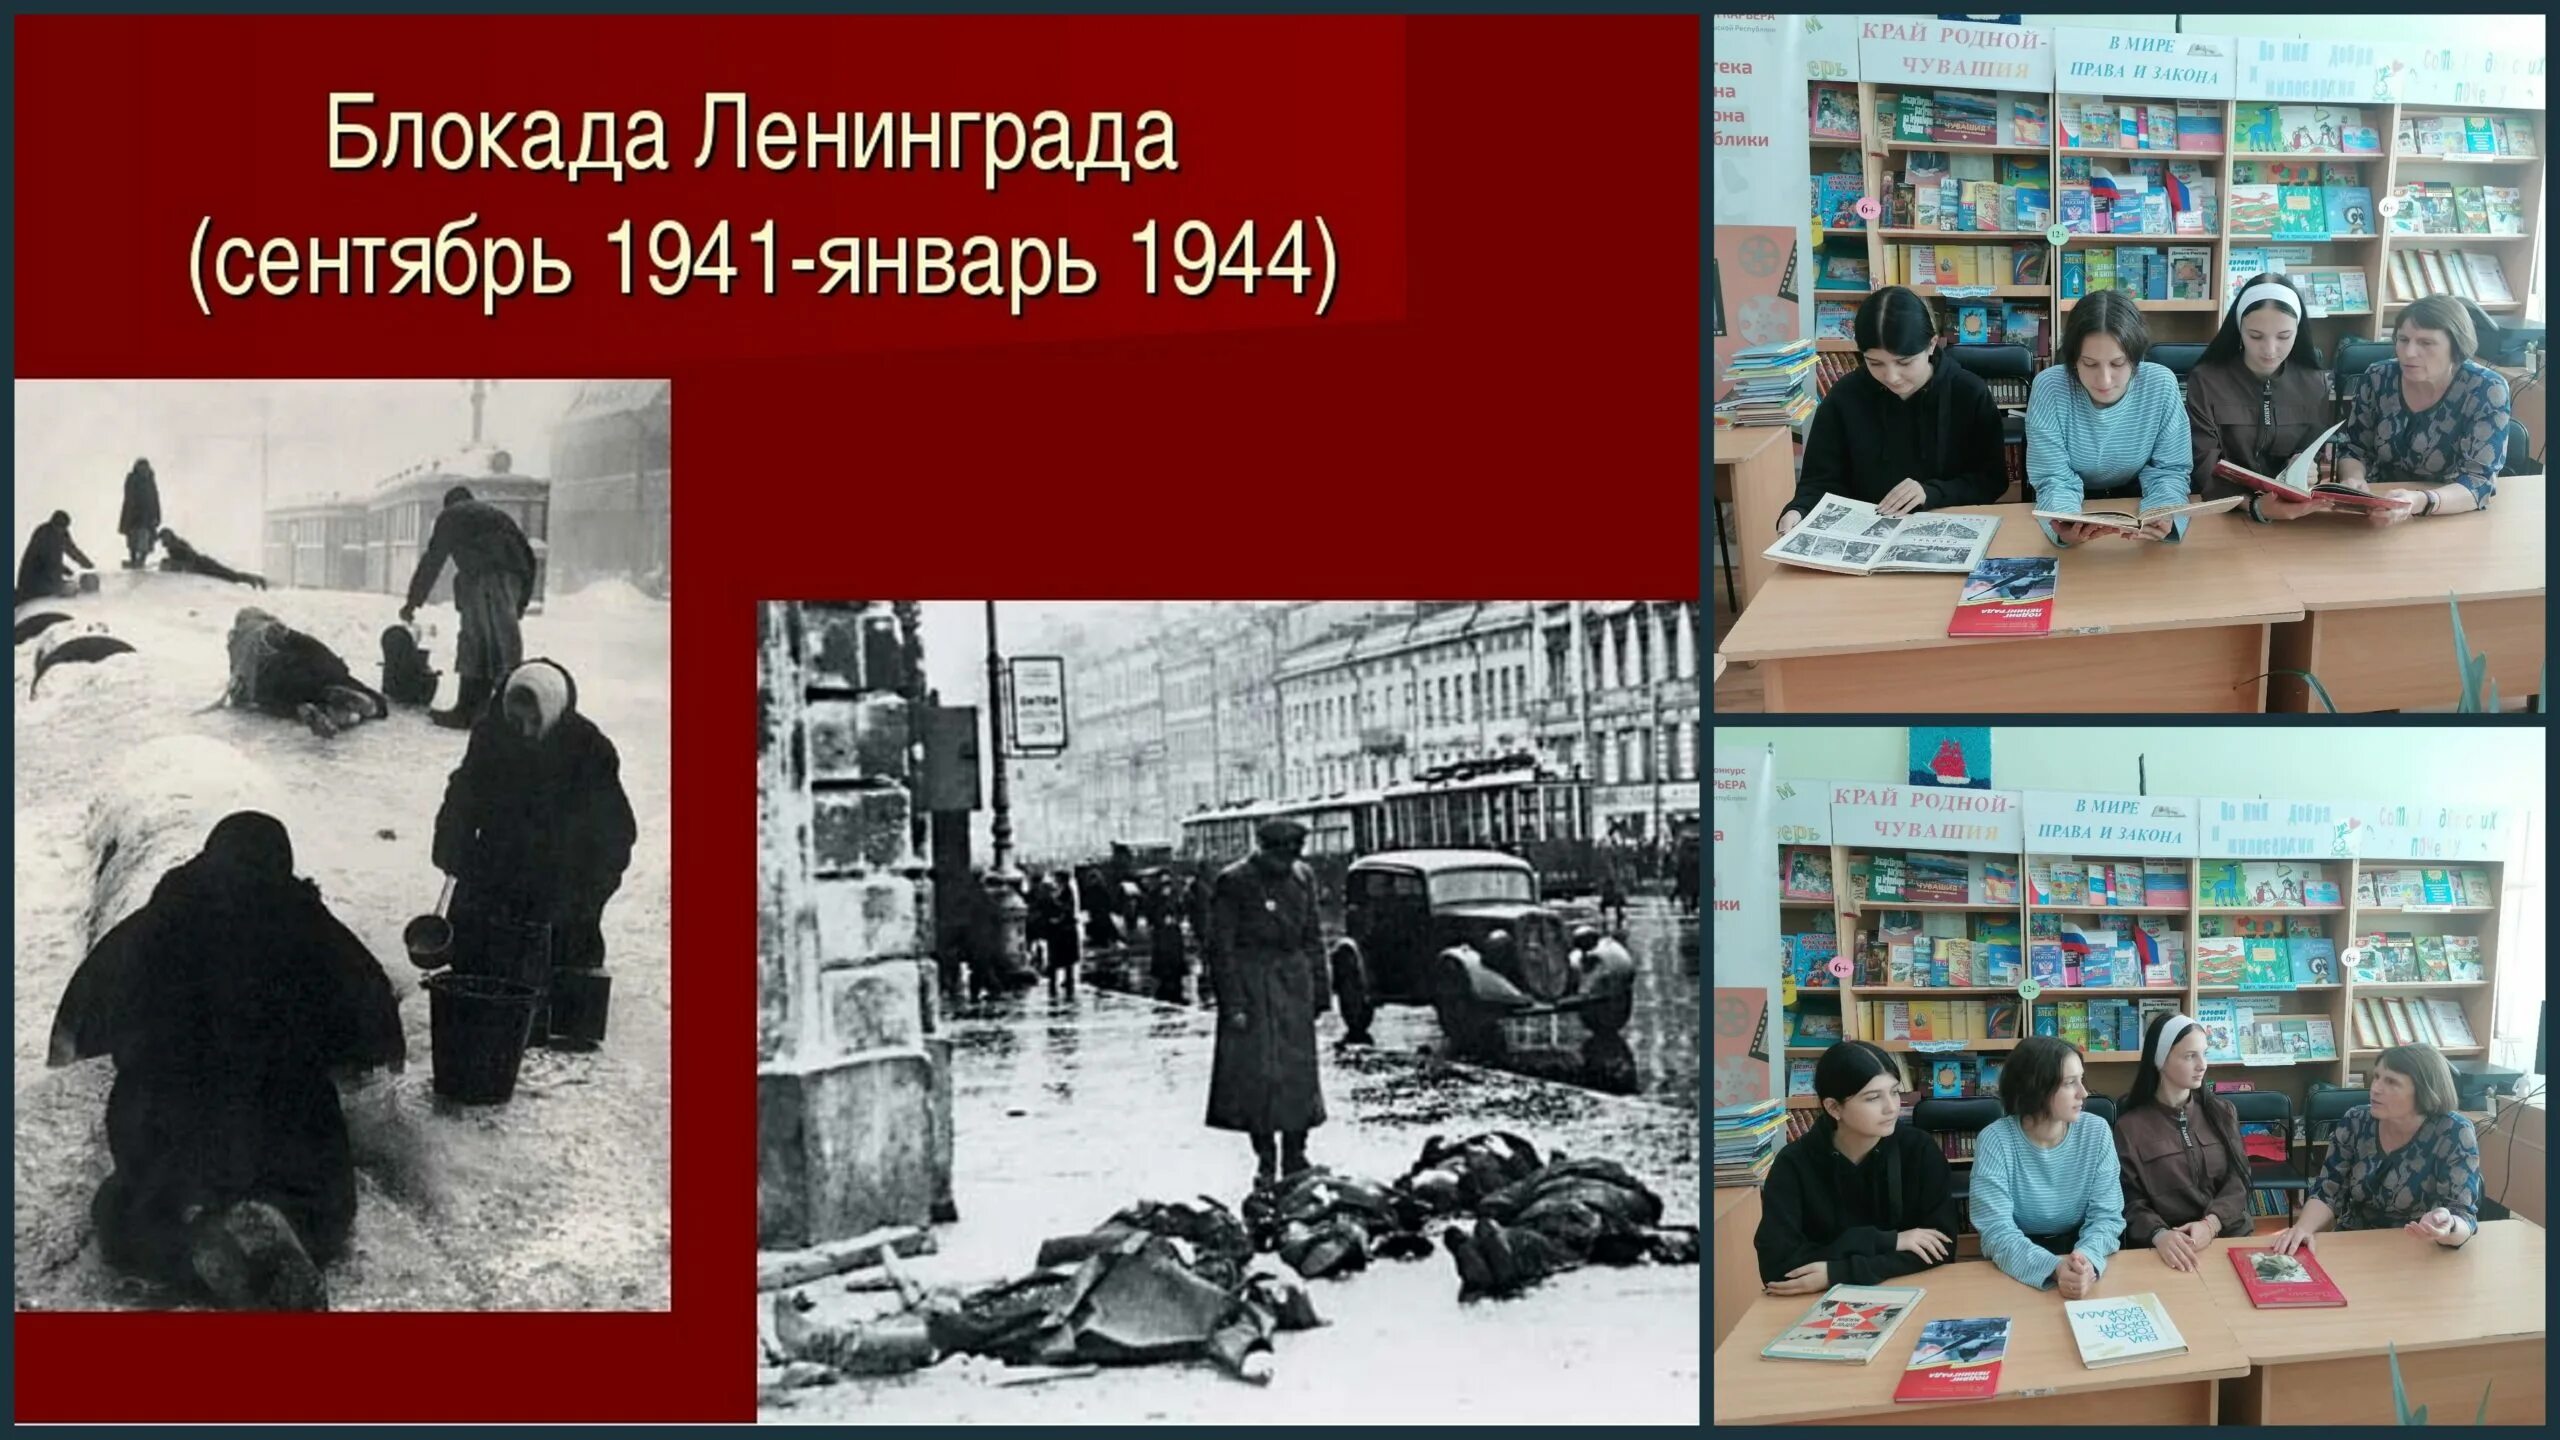 Взять в блокаду. Блокада Ленинграда сентябрь 1941. 8 Сентября 1941 года - 27 января 1944 года - блокада Ленинграда..